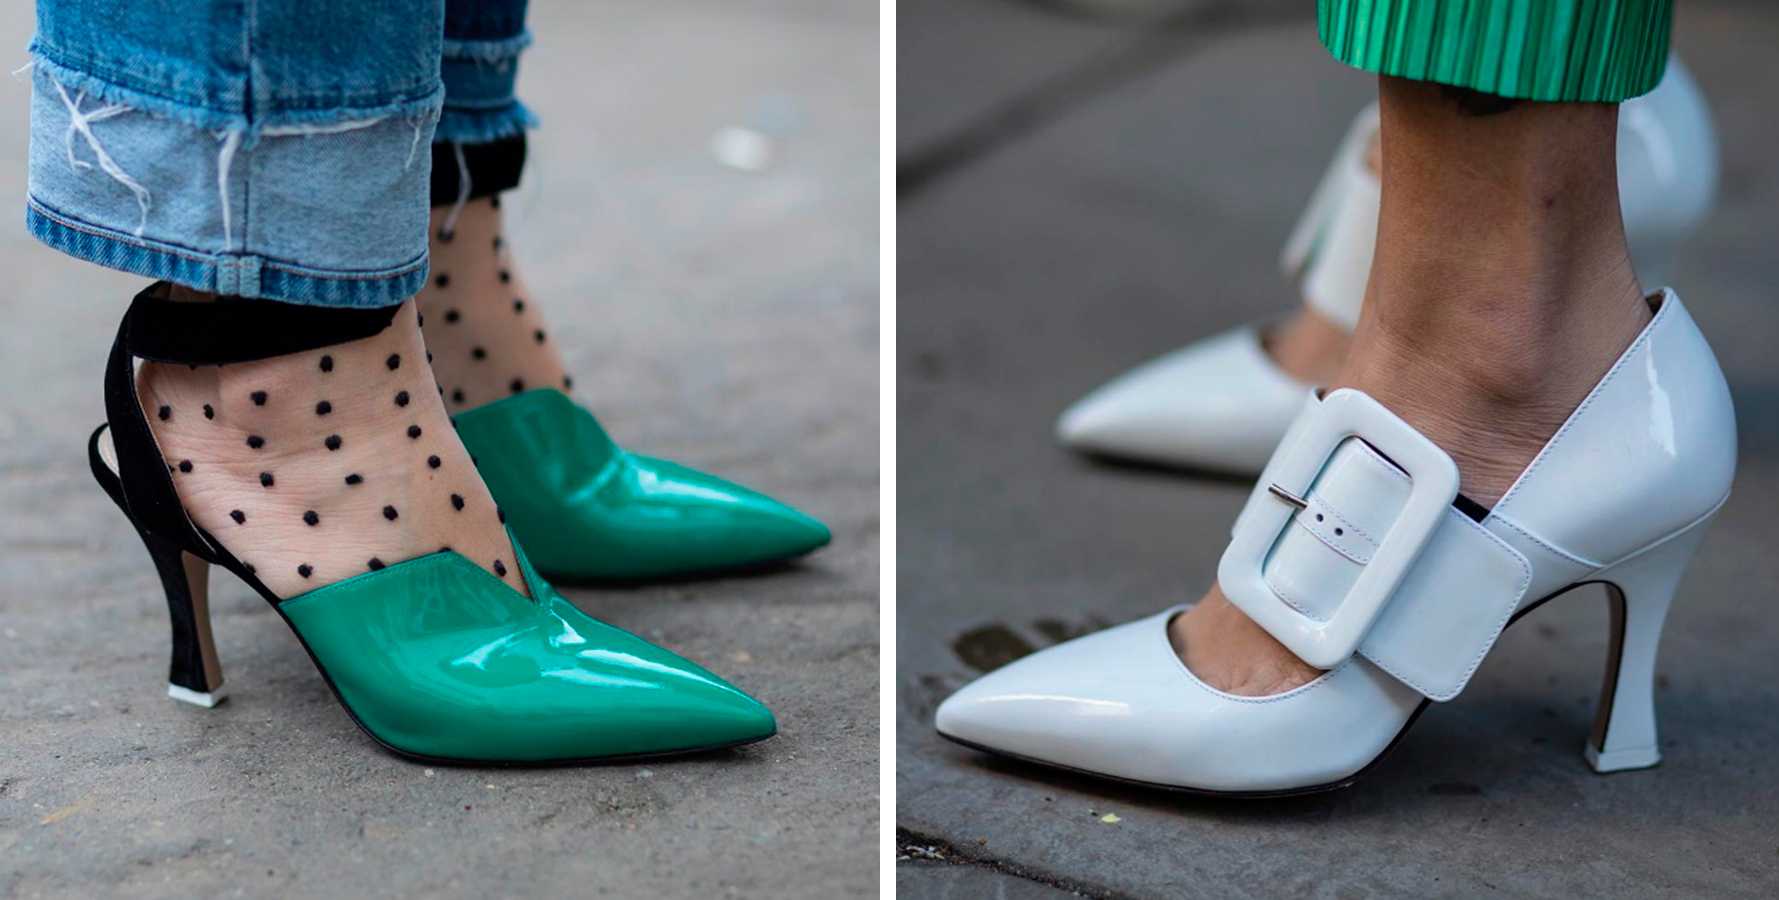 Модные туфли 2021: самые изящные и женственные модели